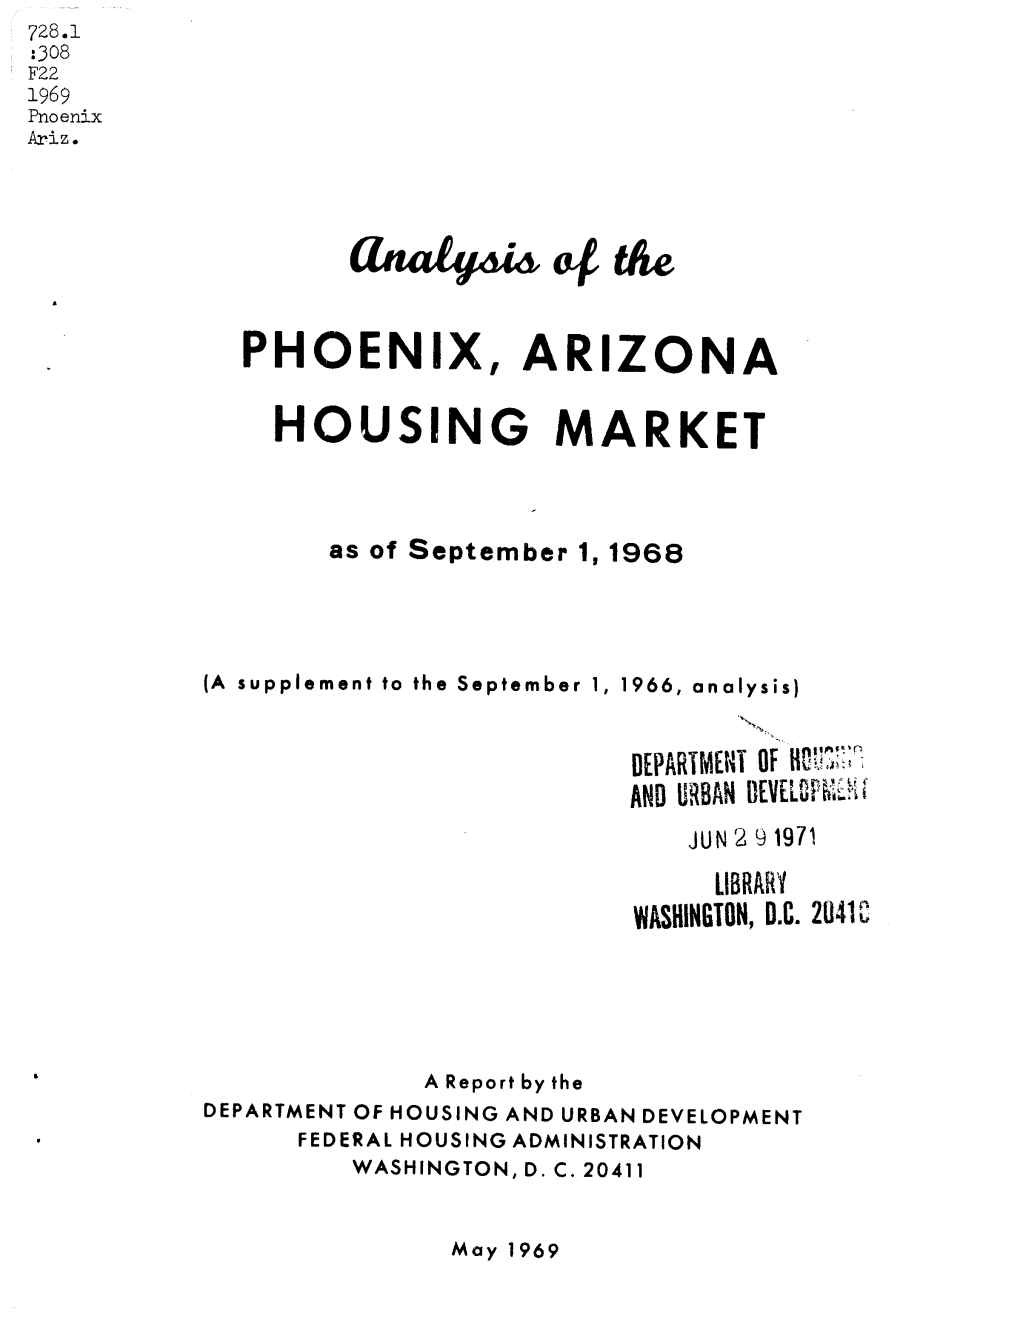 Analysis of the Phoenix, Arizona Housing Market